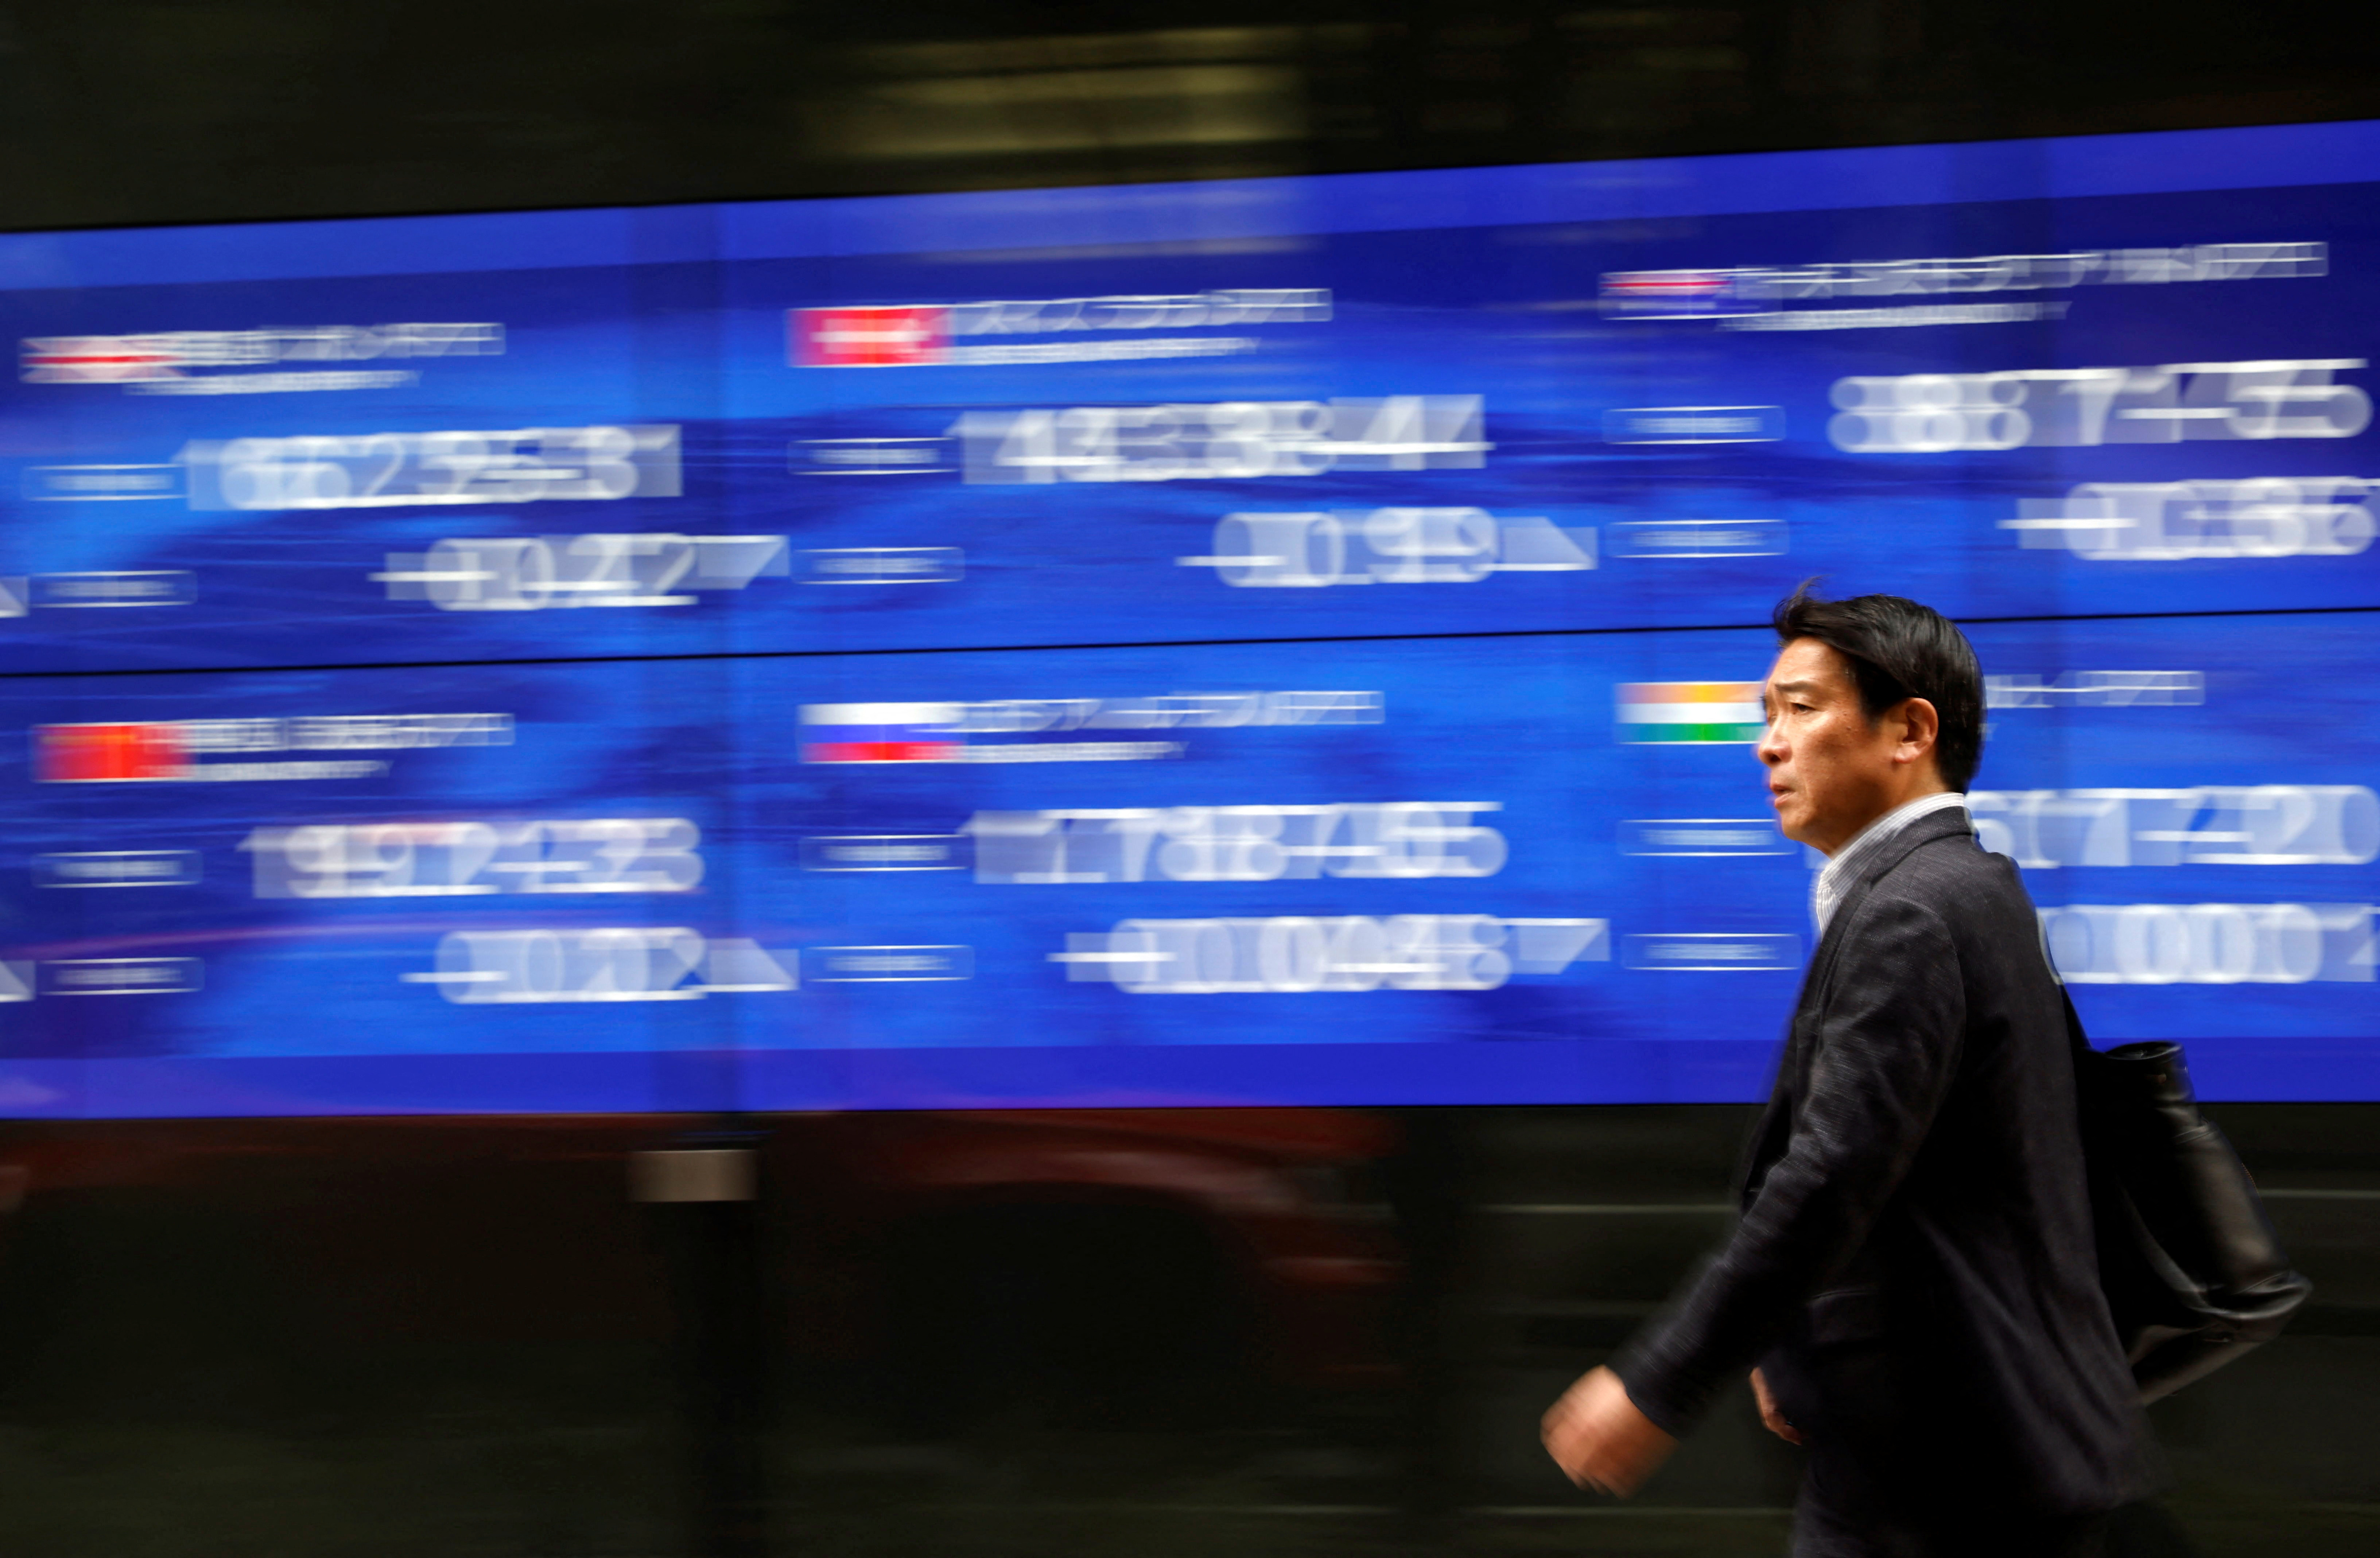 Um transeunte passa por um monitor elétrico exibindo o índice de preços de ações de vários países fora de um banco em Tóquio